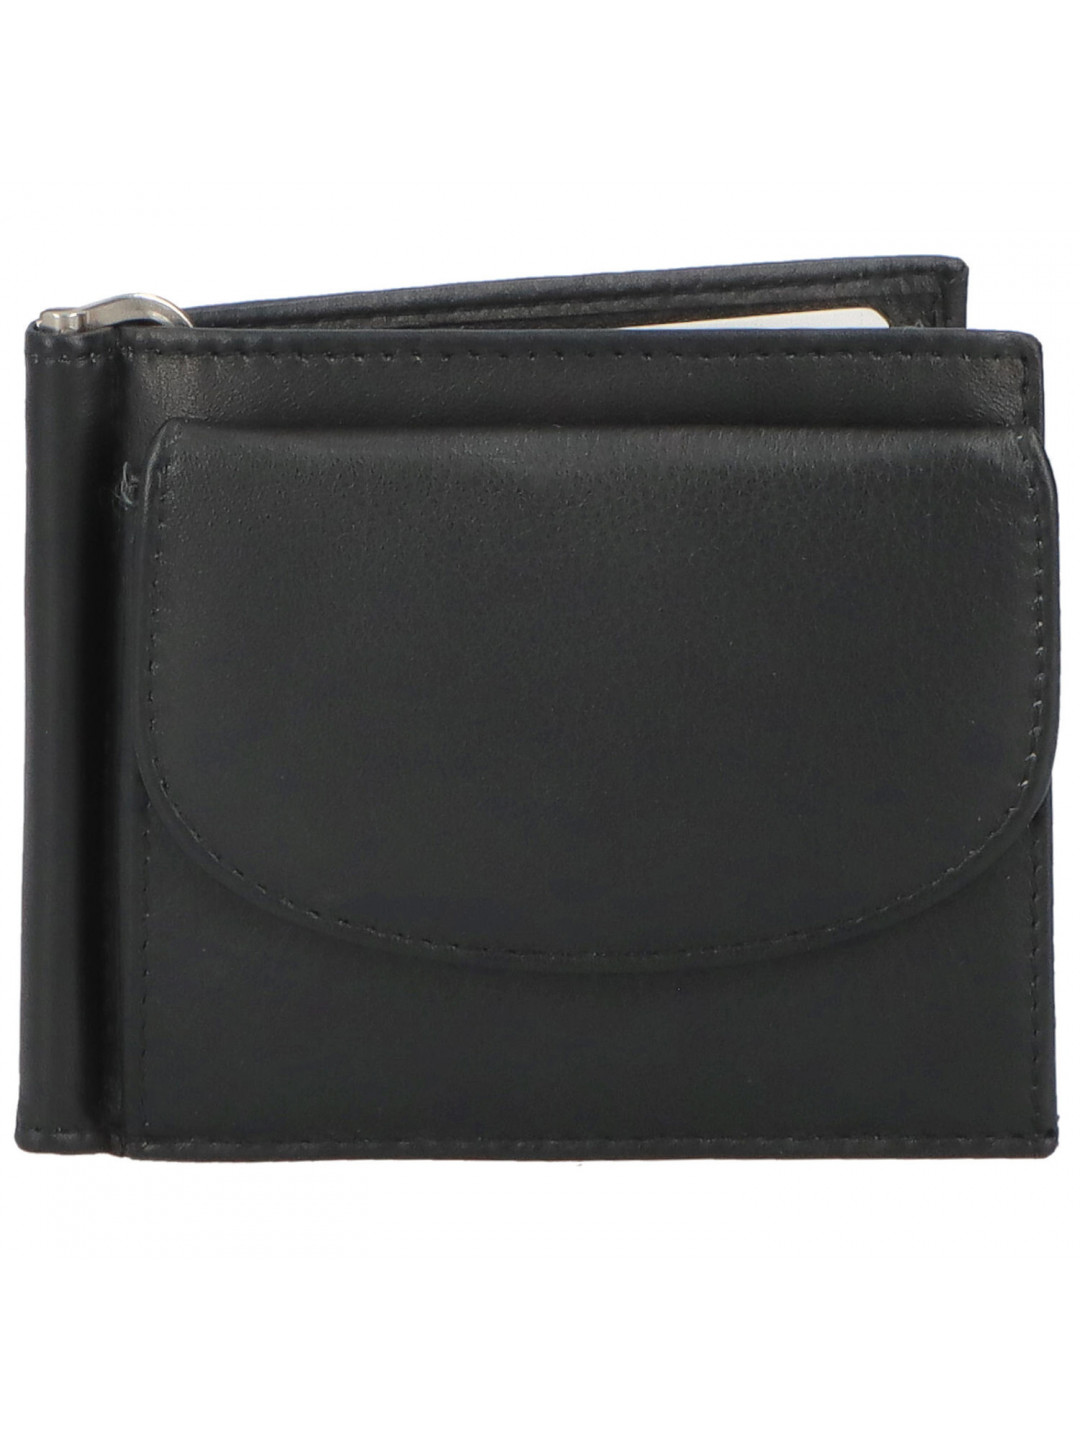 Malá pánská kožená peněženka černá – Tomas Poulis